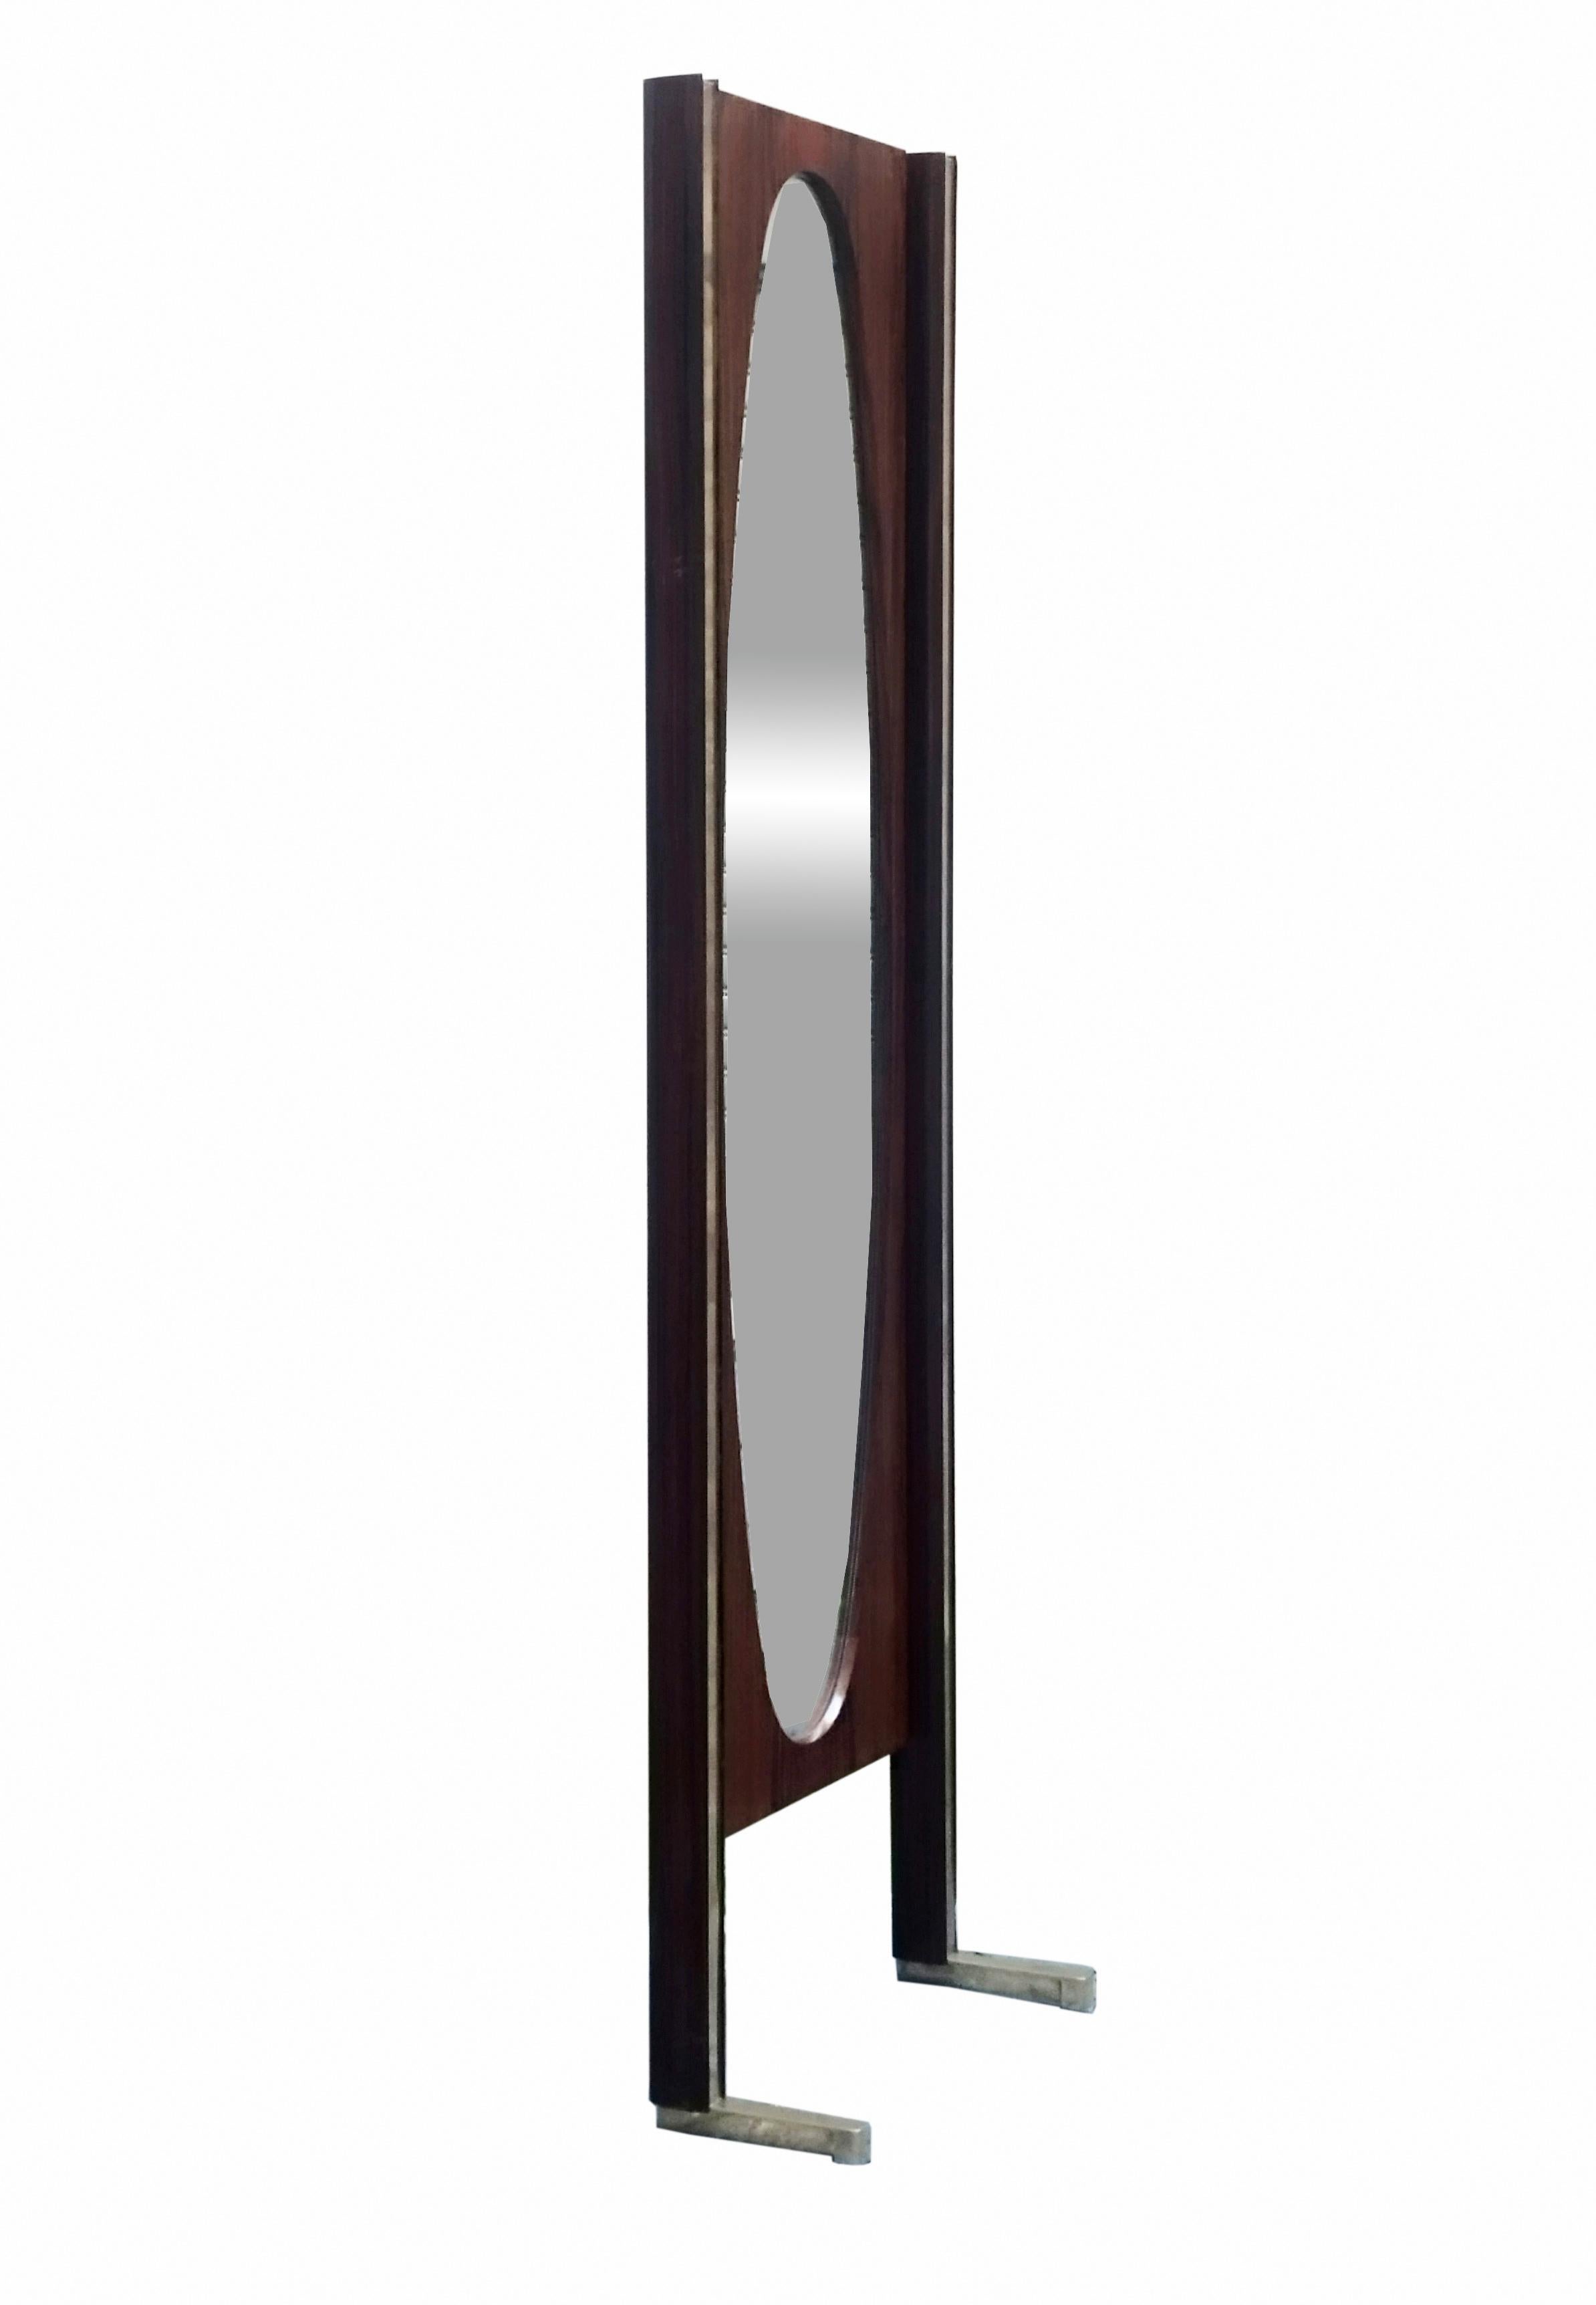 Ein seltener, in den 1960er Jahren in Italien hergestellter Bodenspiegel mit einem Holzrahmen und Messingprofilen, die auf schweren Messingfüßen ruhen. Im Inneren ist ein ovaler Spiegel angebracht.